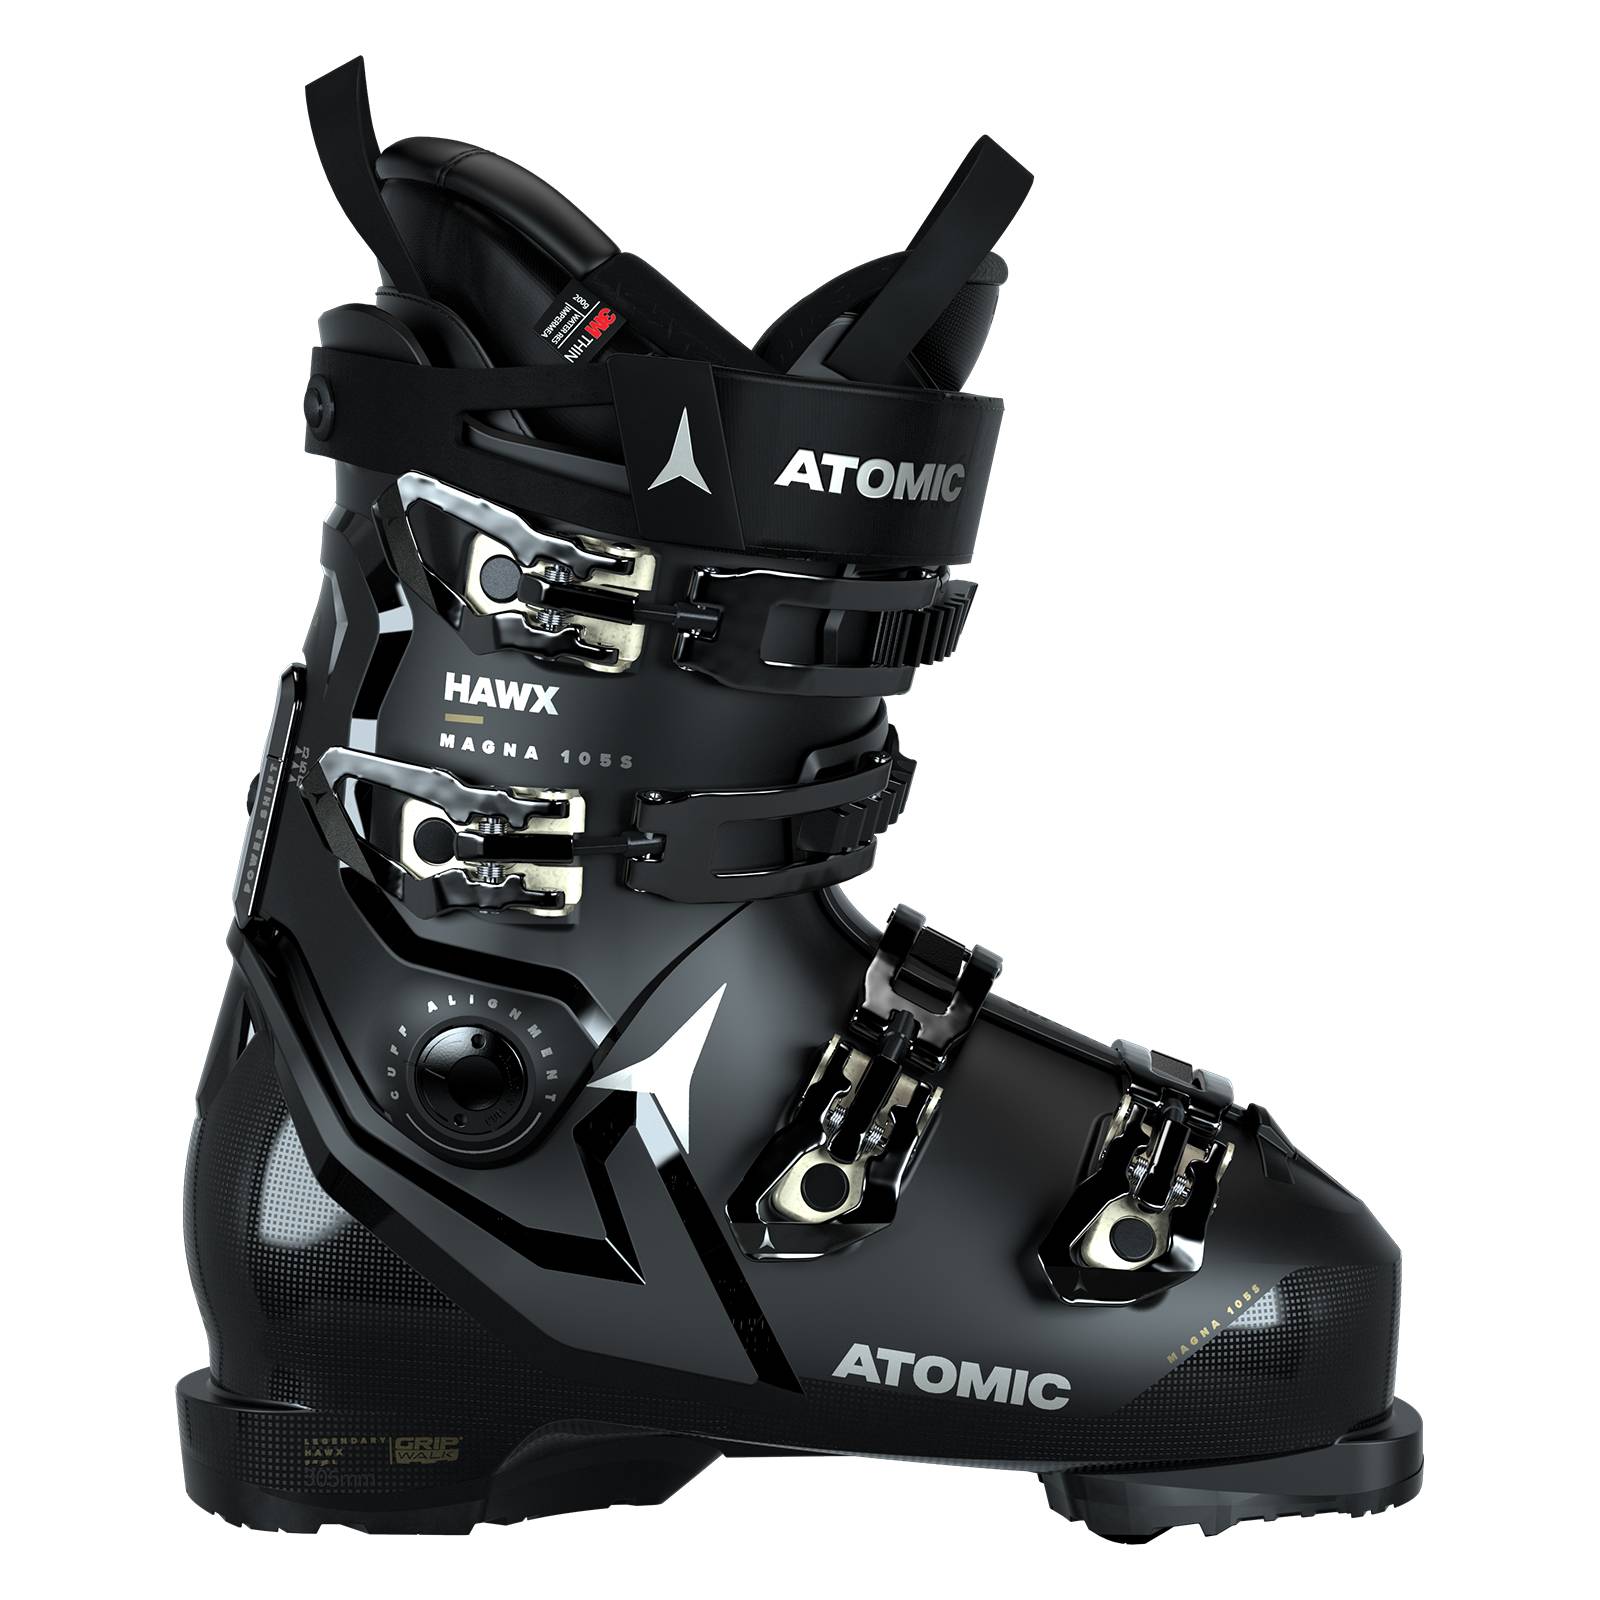 ATOMIC Hawx Magna 105 S GW Damen Skischuhe schwarz